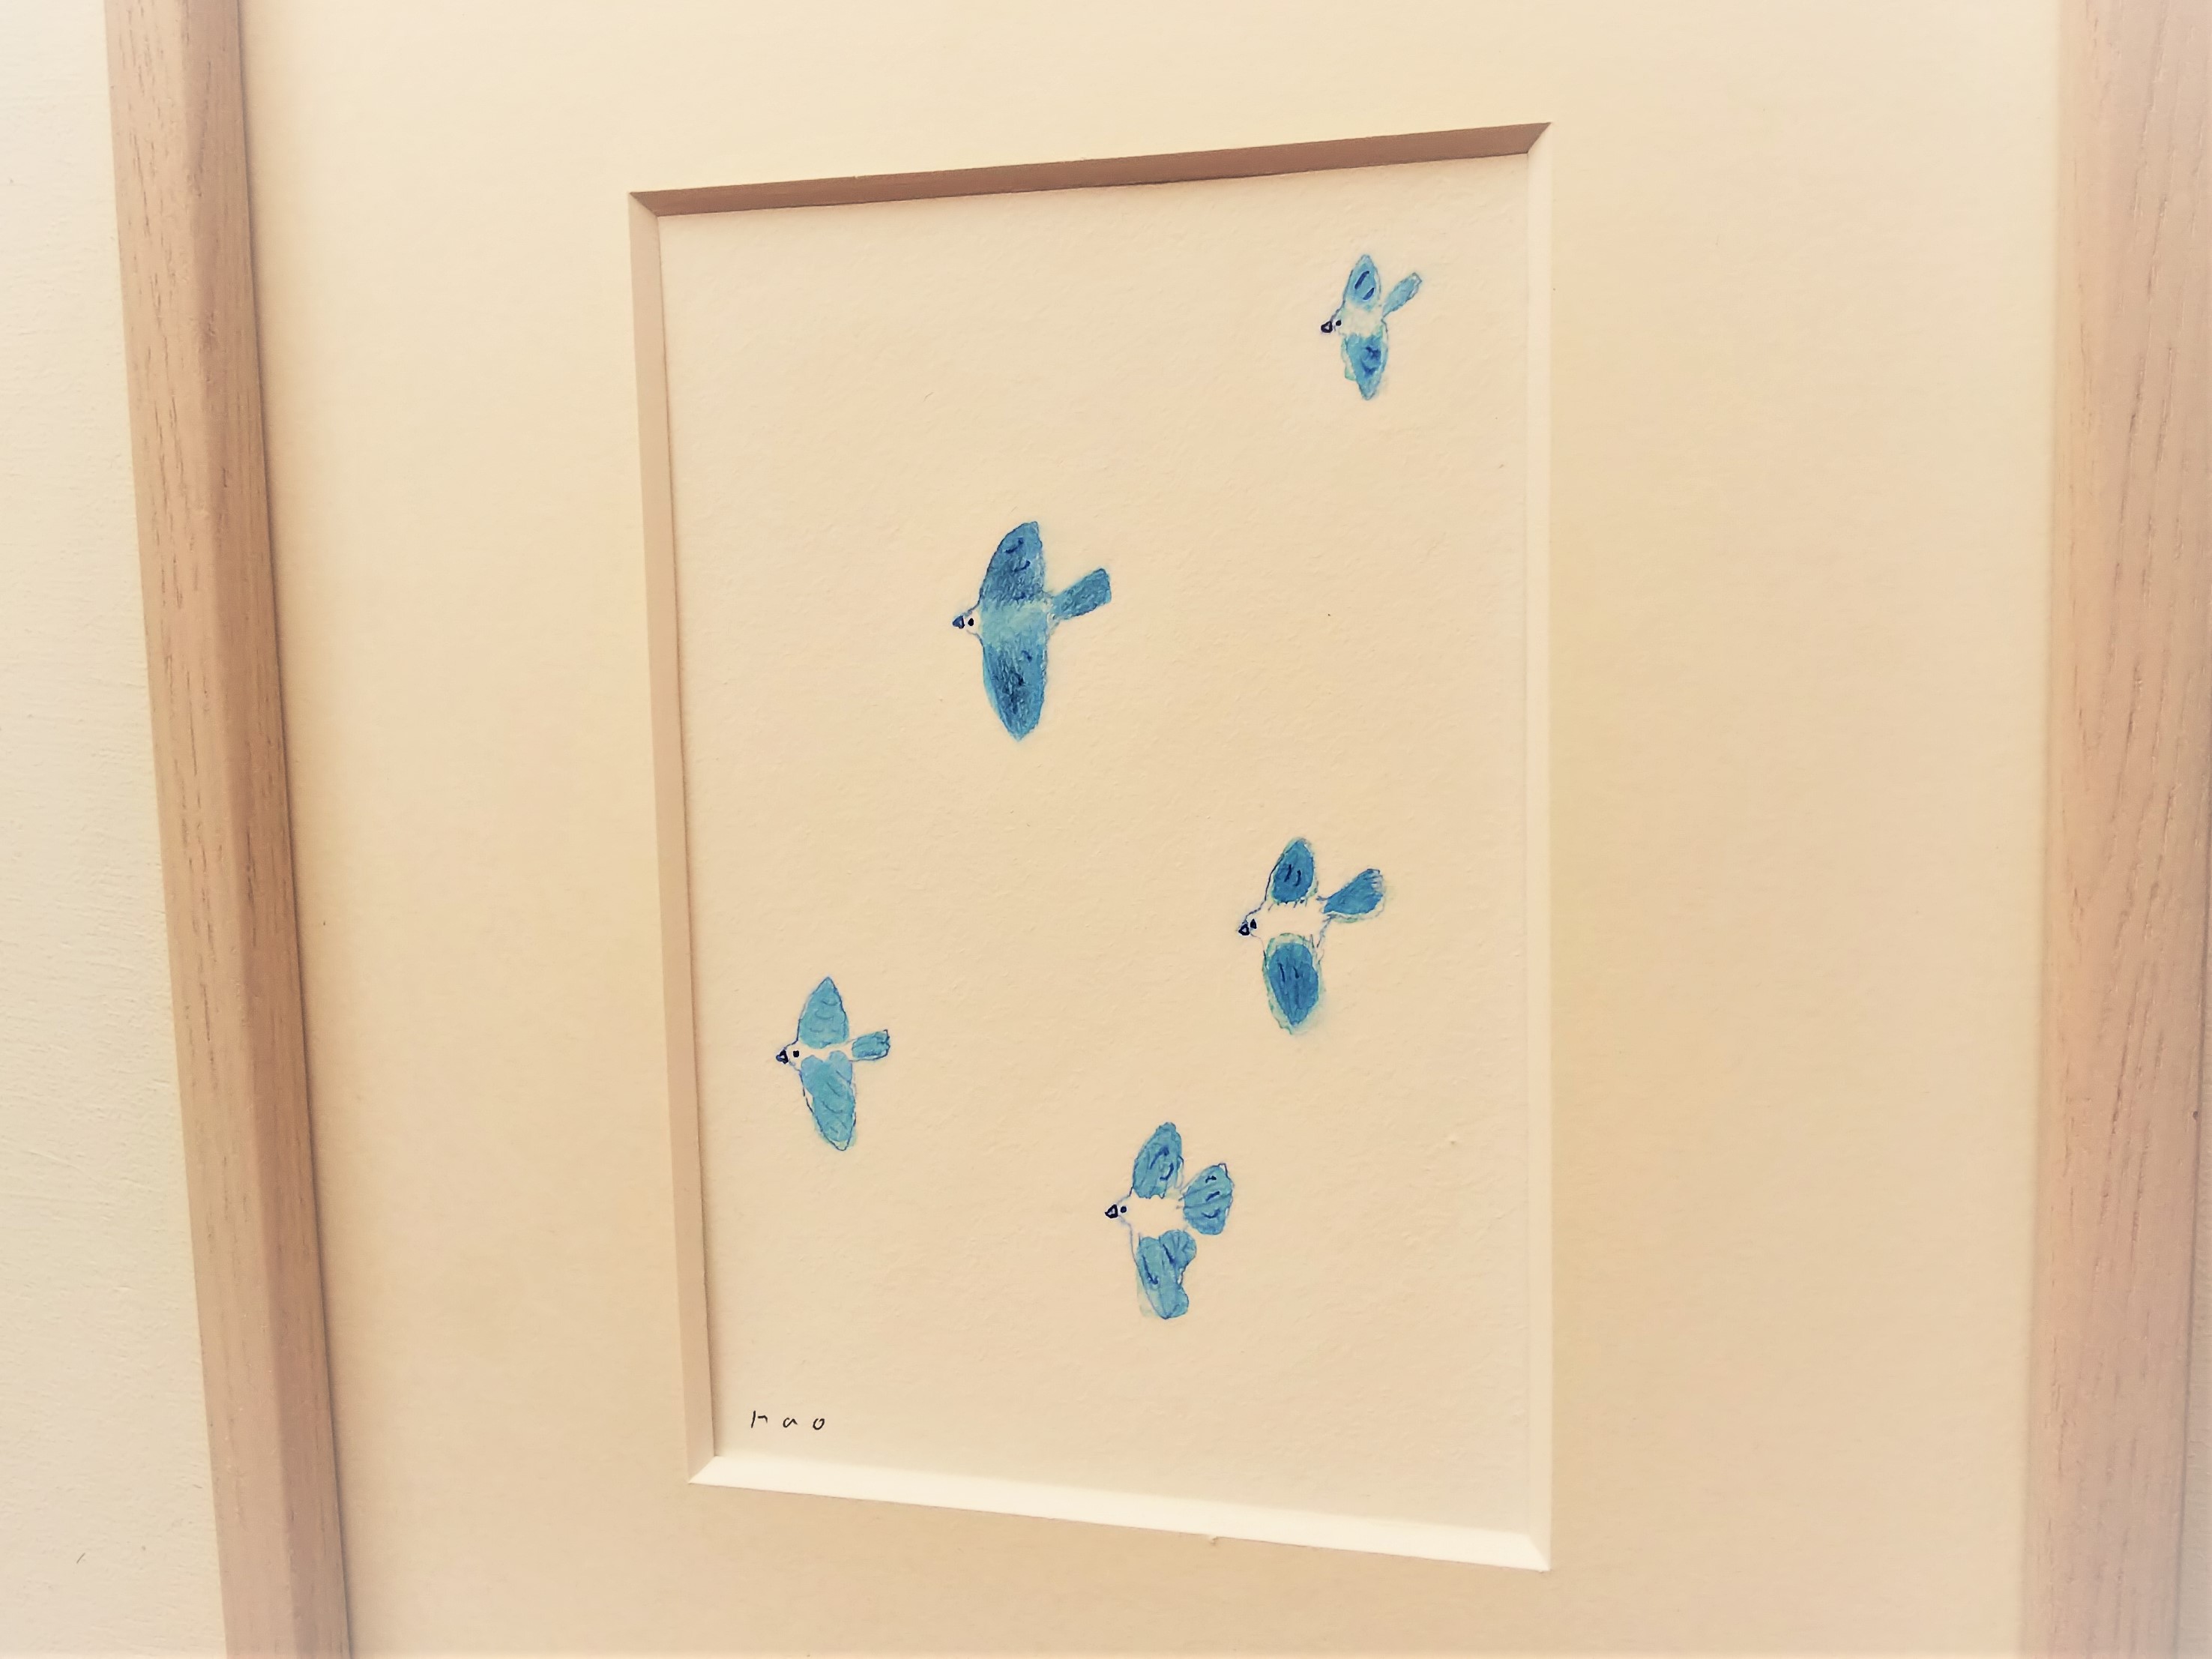 幸せを運ぶ 青い鳥 イラスト原画 額縁入り Iichi ハンドメイド クラフト作品 手仕事品の通販